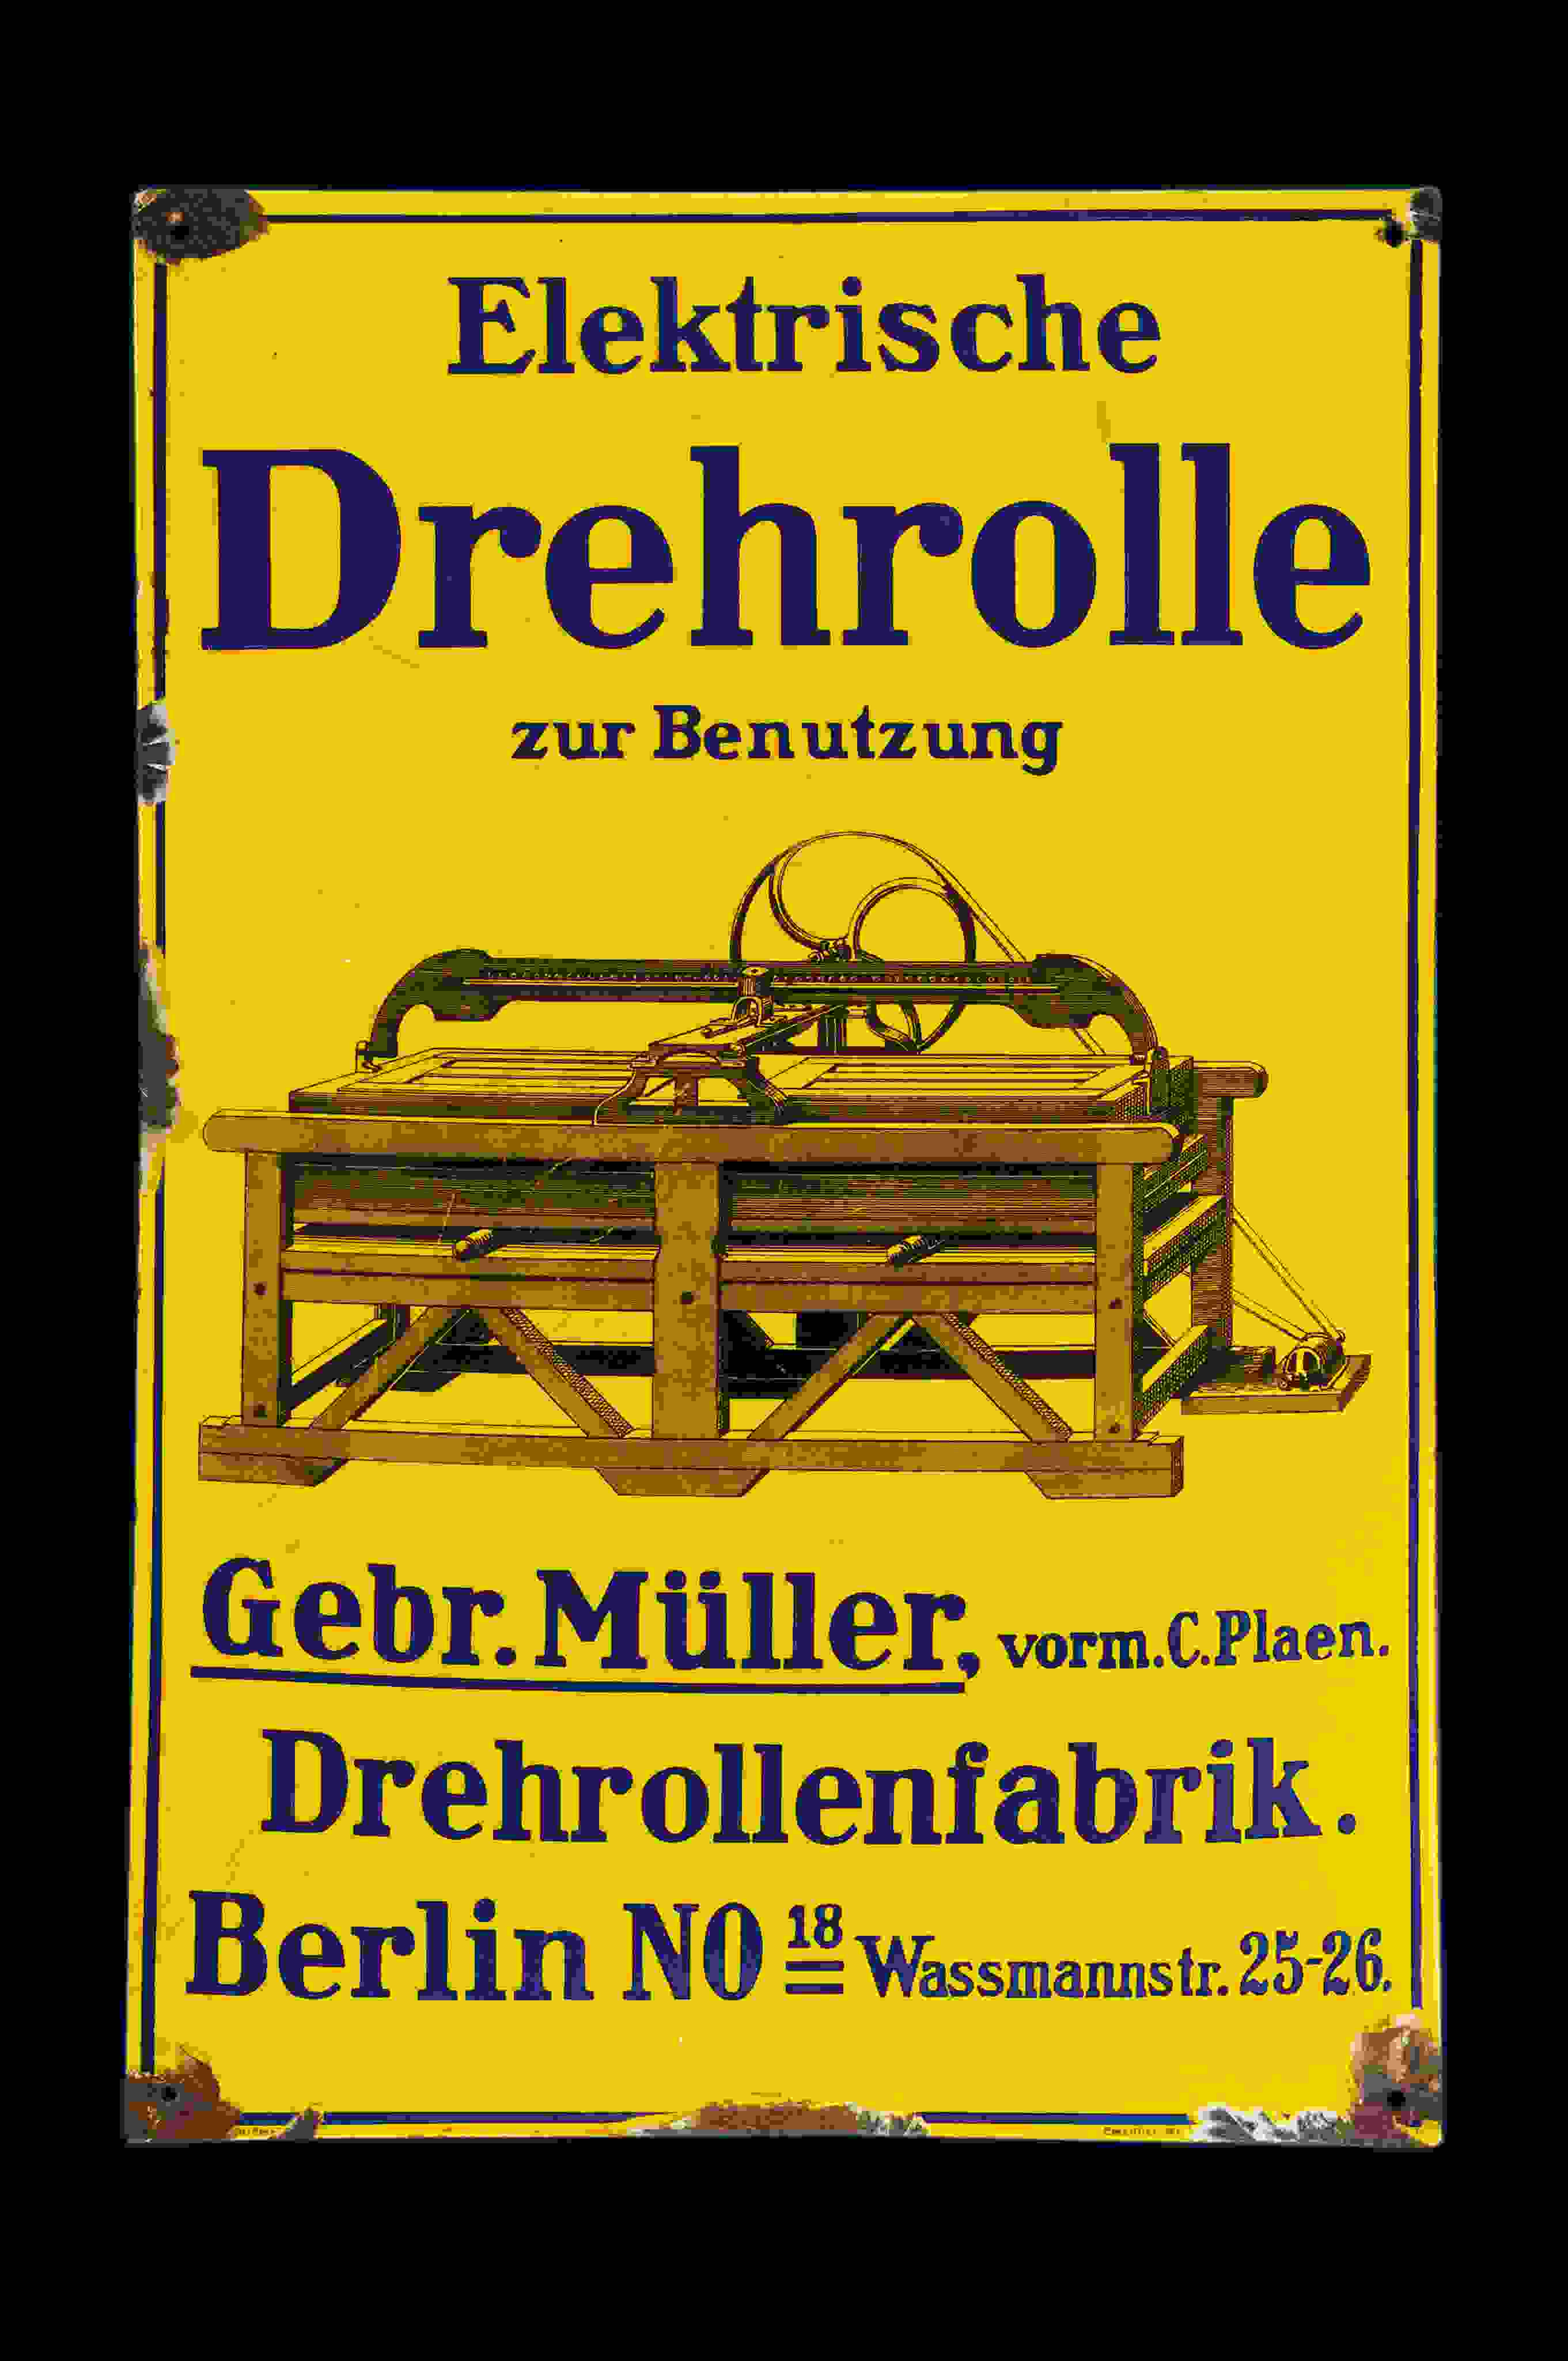 Elektrische Drehrolle Gebr. Müller 